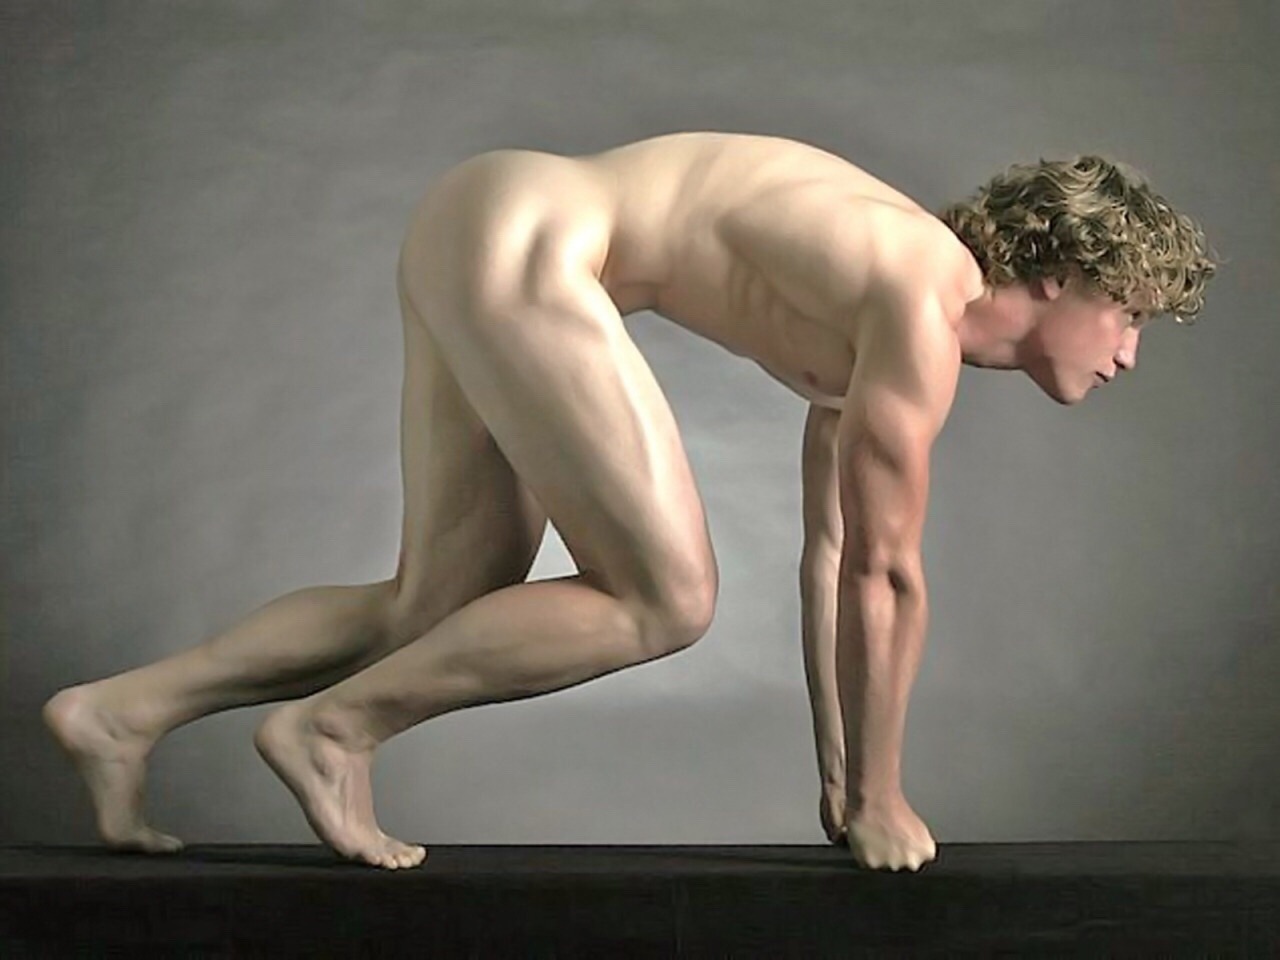 Vittorio carvelli erotic male nude studies hot porn pictures